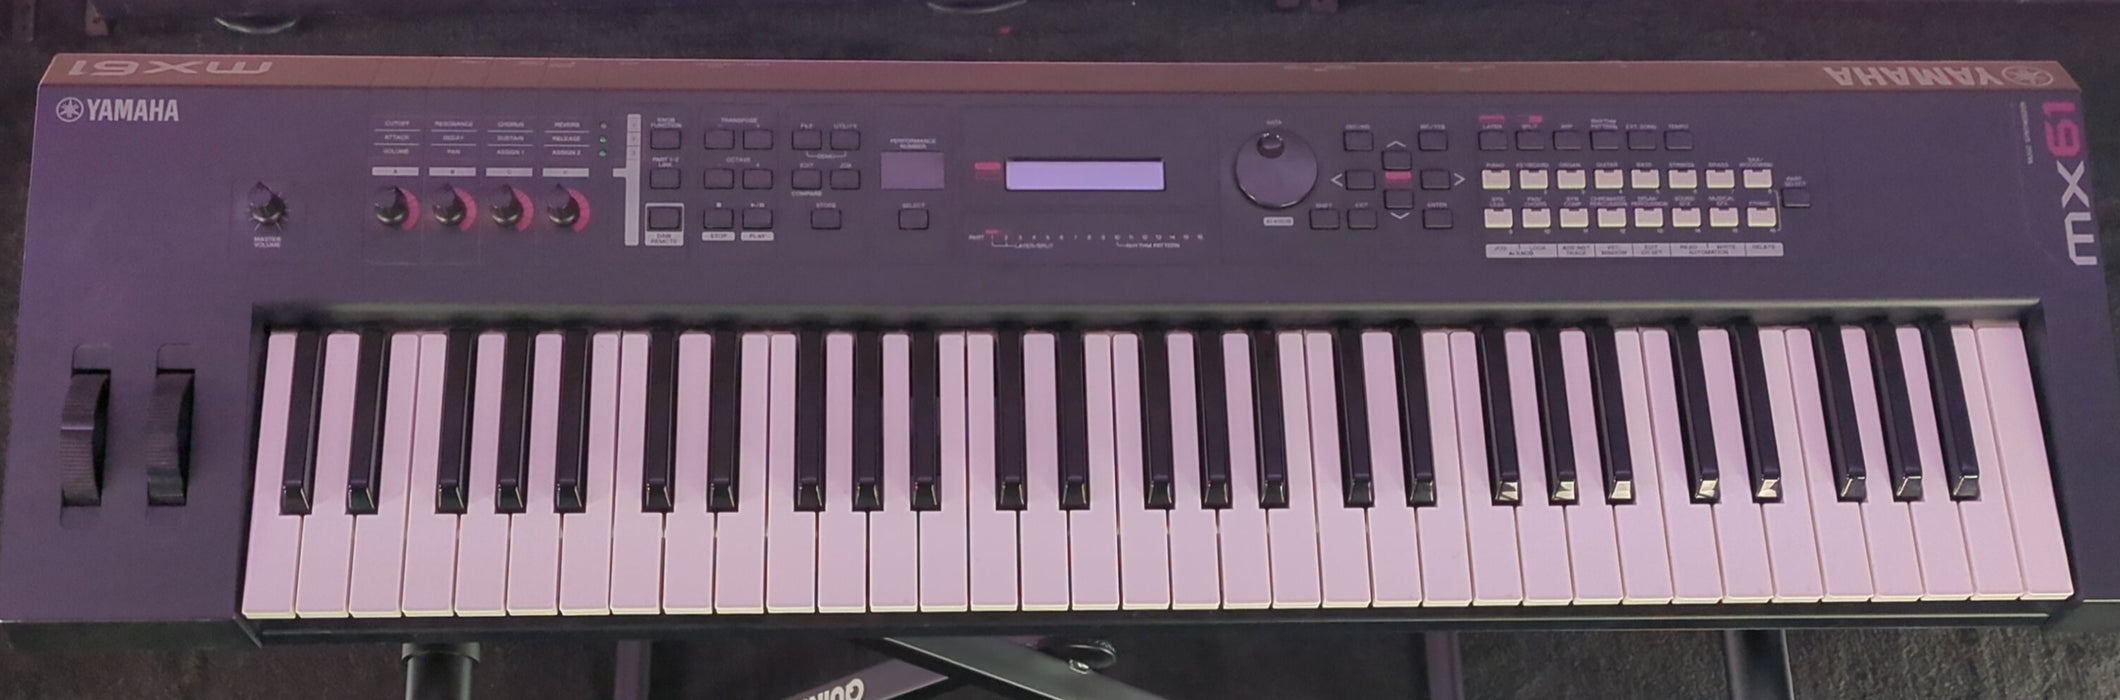 Yamaha MX61 - 61 Key Digital Synthesizer - Used